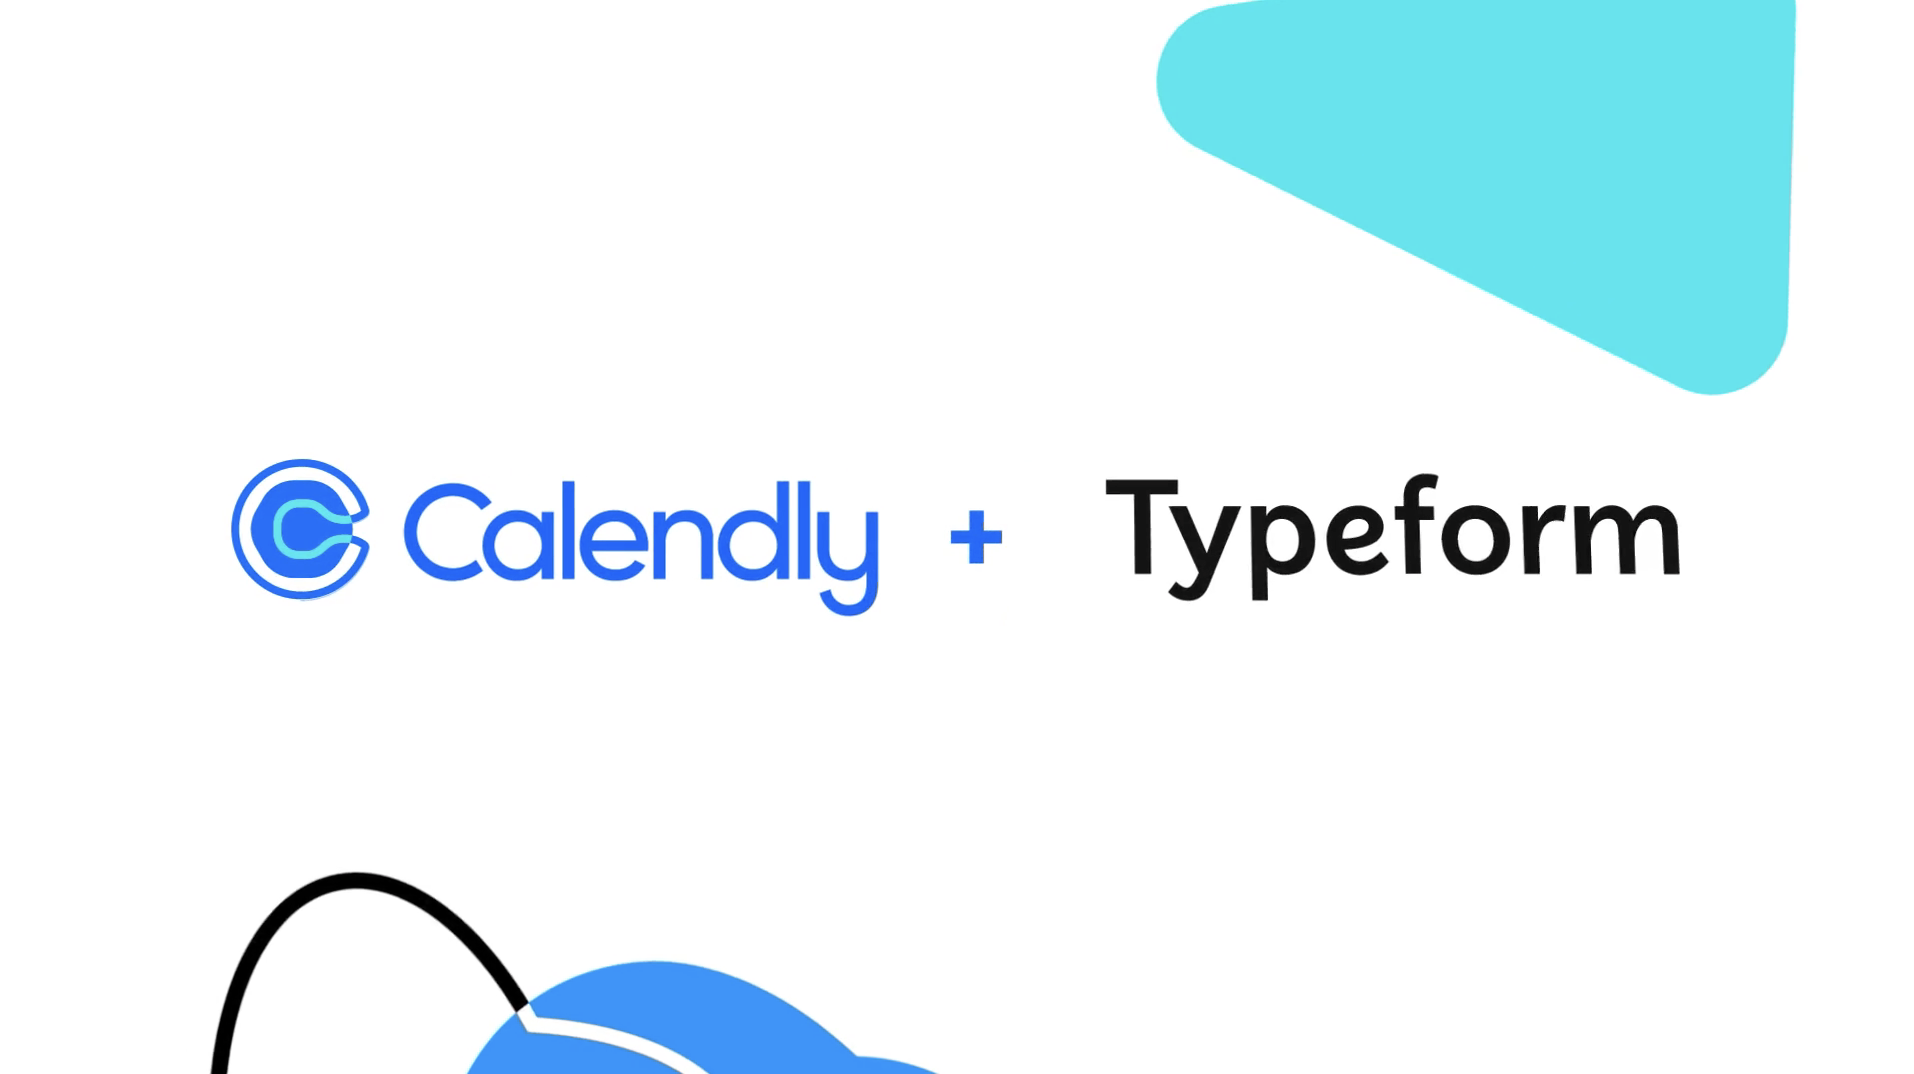 Calendly + Typeform